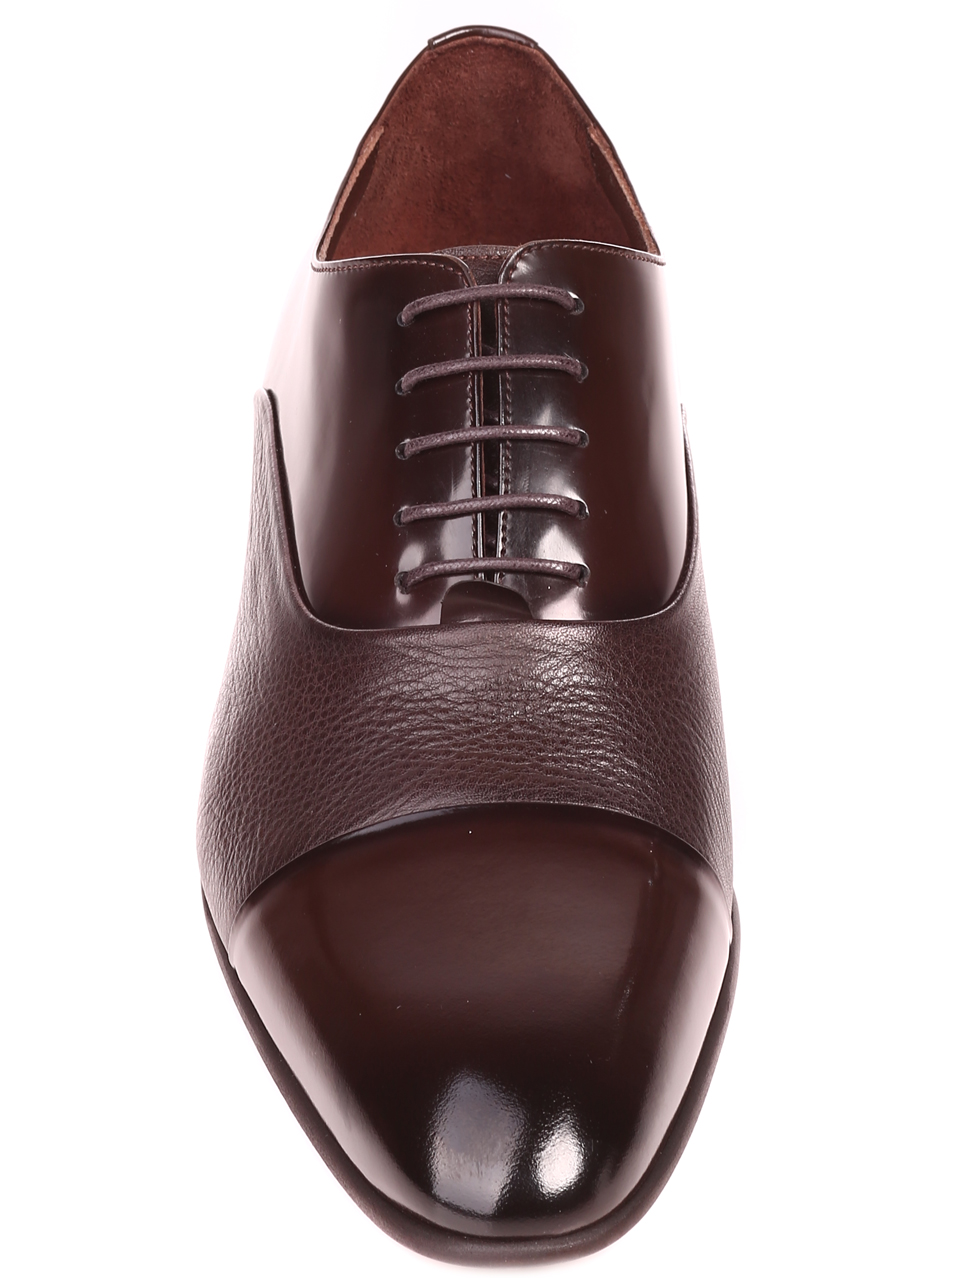 Елегантни мъжки обувки от естествен лак и естествена кожа 7AT-22286 brown